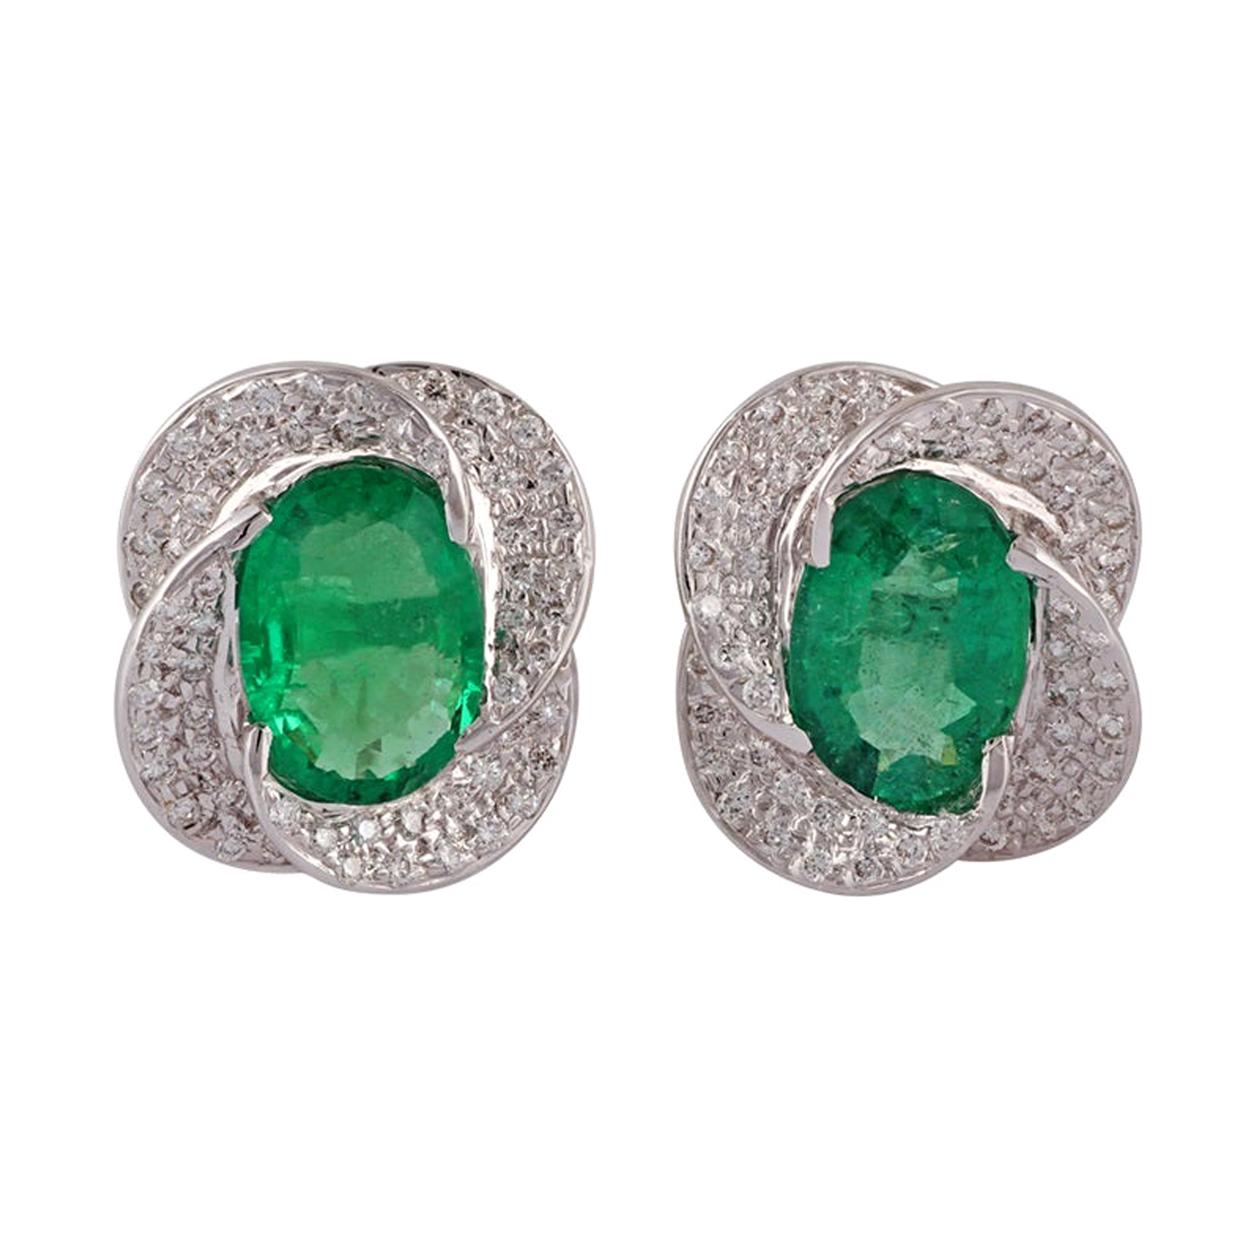 Emerald & Diamond Earrings Studded in 18K White Gold